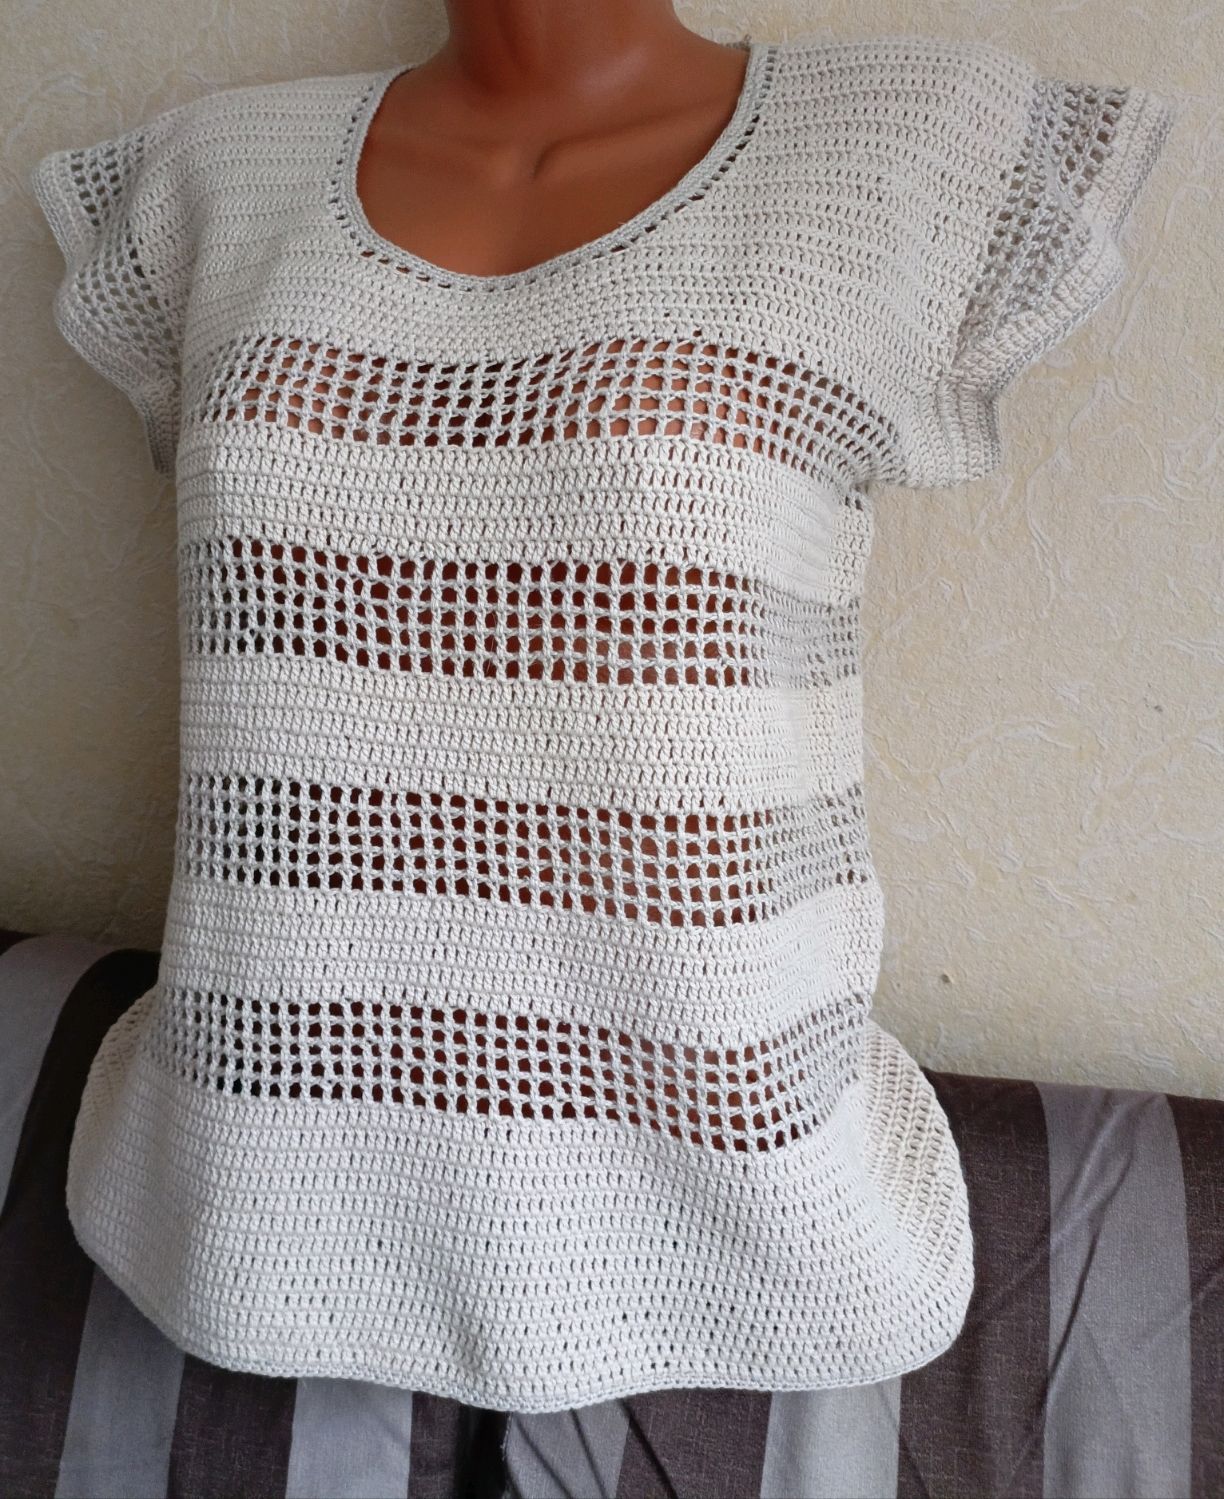 Вязаная блузка. 5 вариантов крючком – Paradosik Handmade - вязание для начинающих и профессионалов